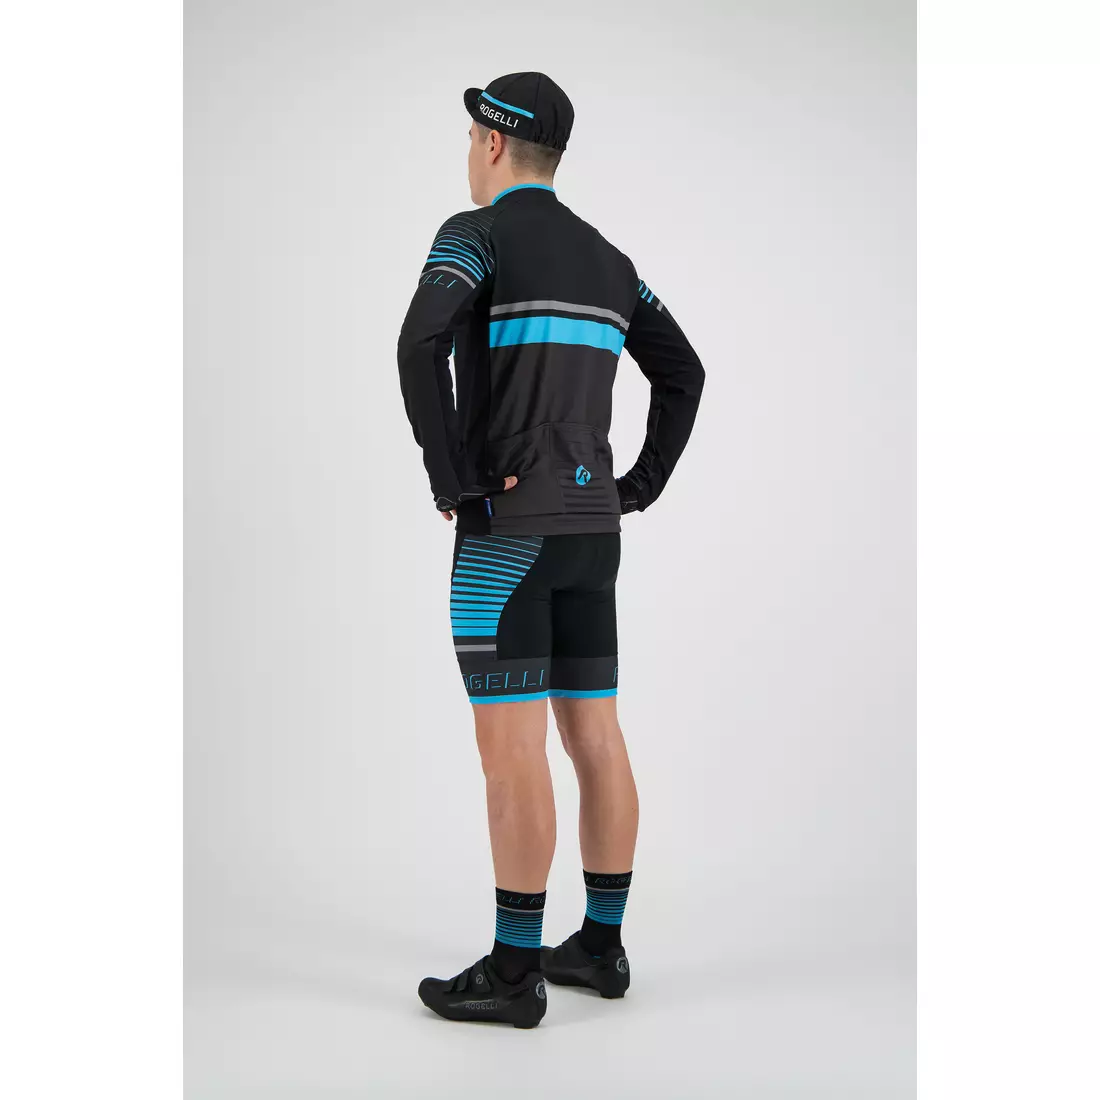 Rogelli HERO 001.266 Pánsky cyklistický dres sivý / čierny / modrý